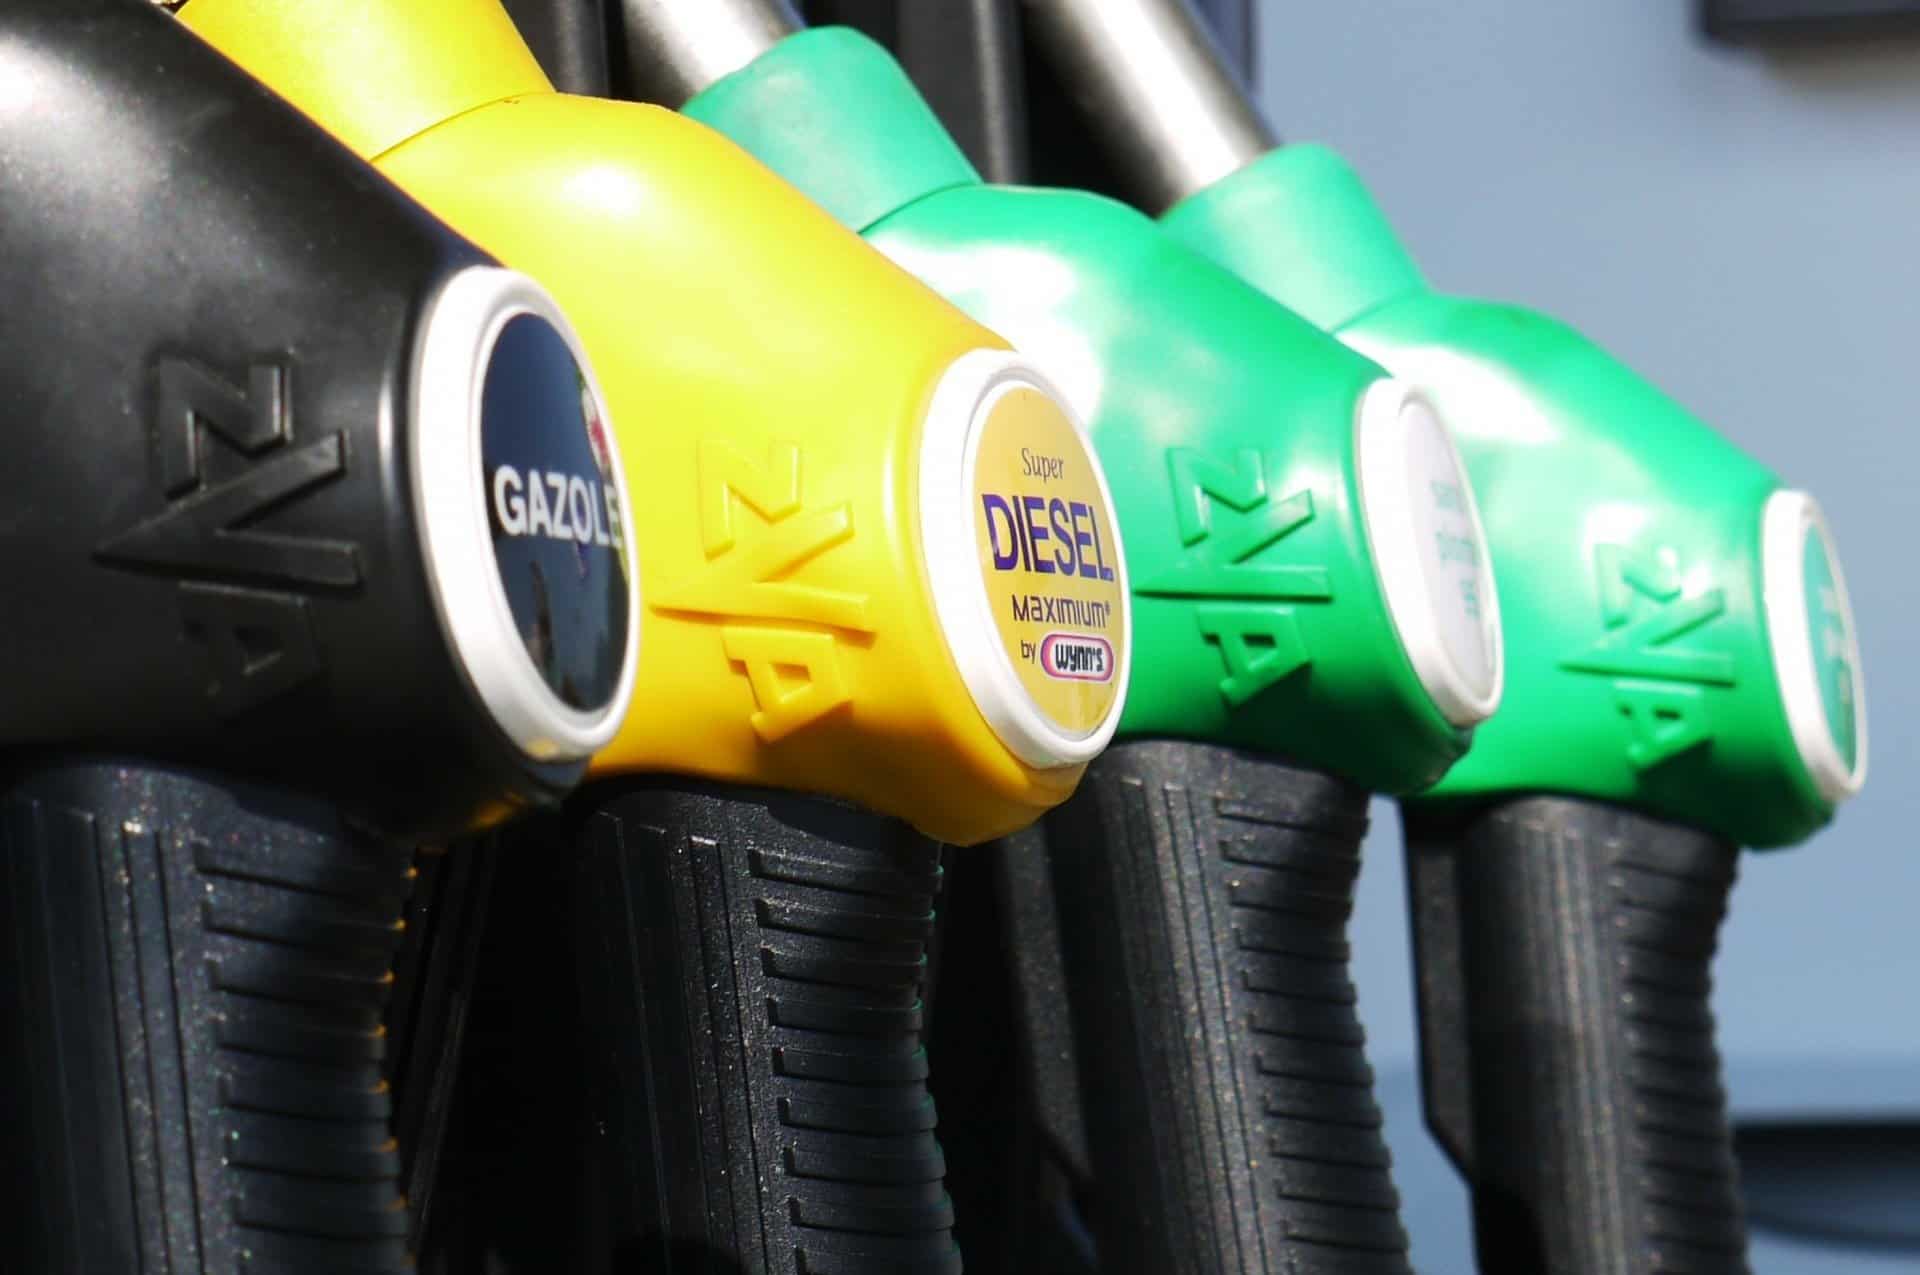 Benzina e gasolio costano sempre di più, l’Unione consumatori lancia l’allarme: “Occhio al 5 febbraio”